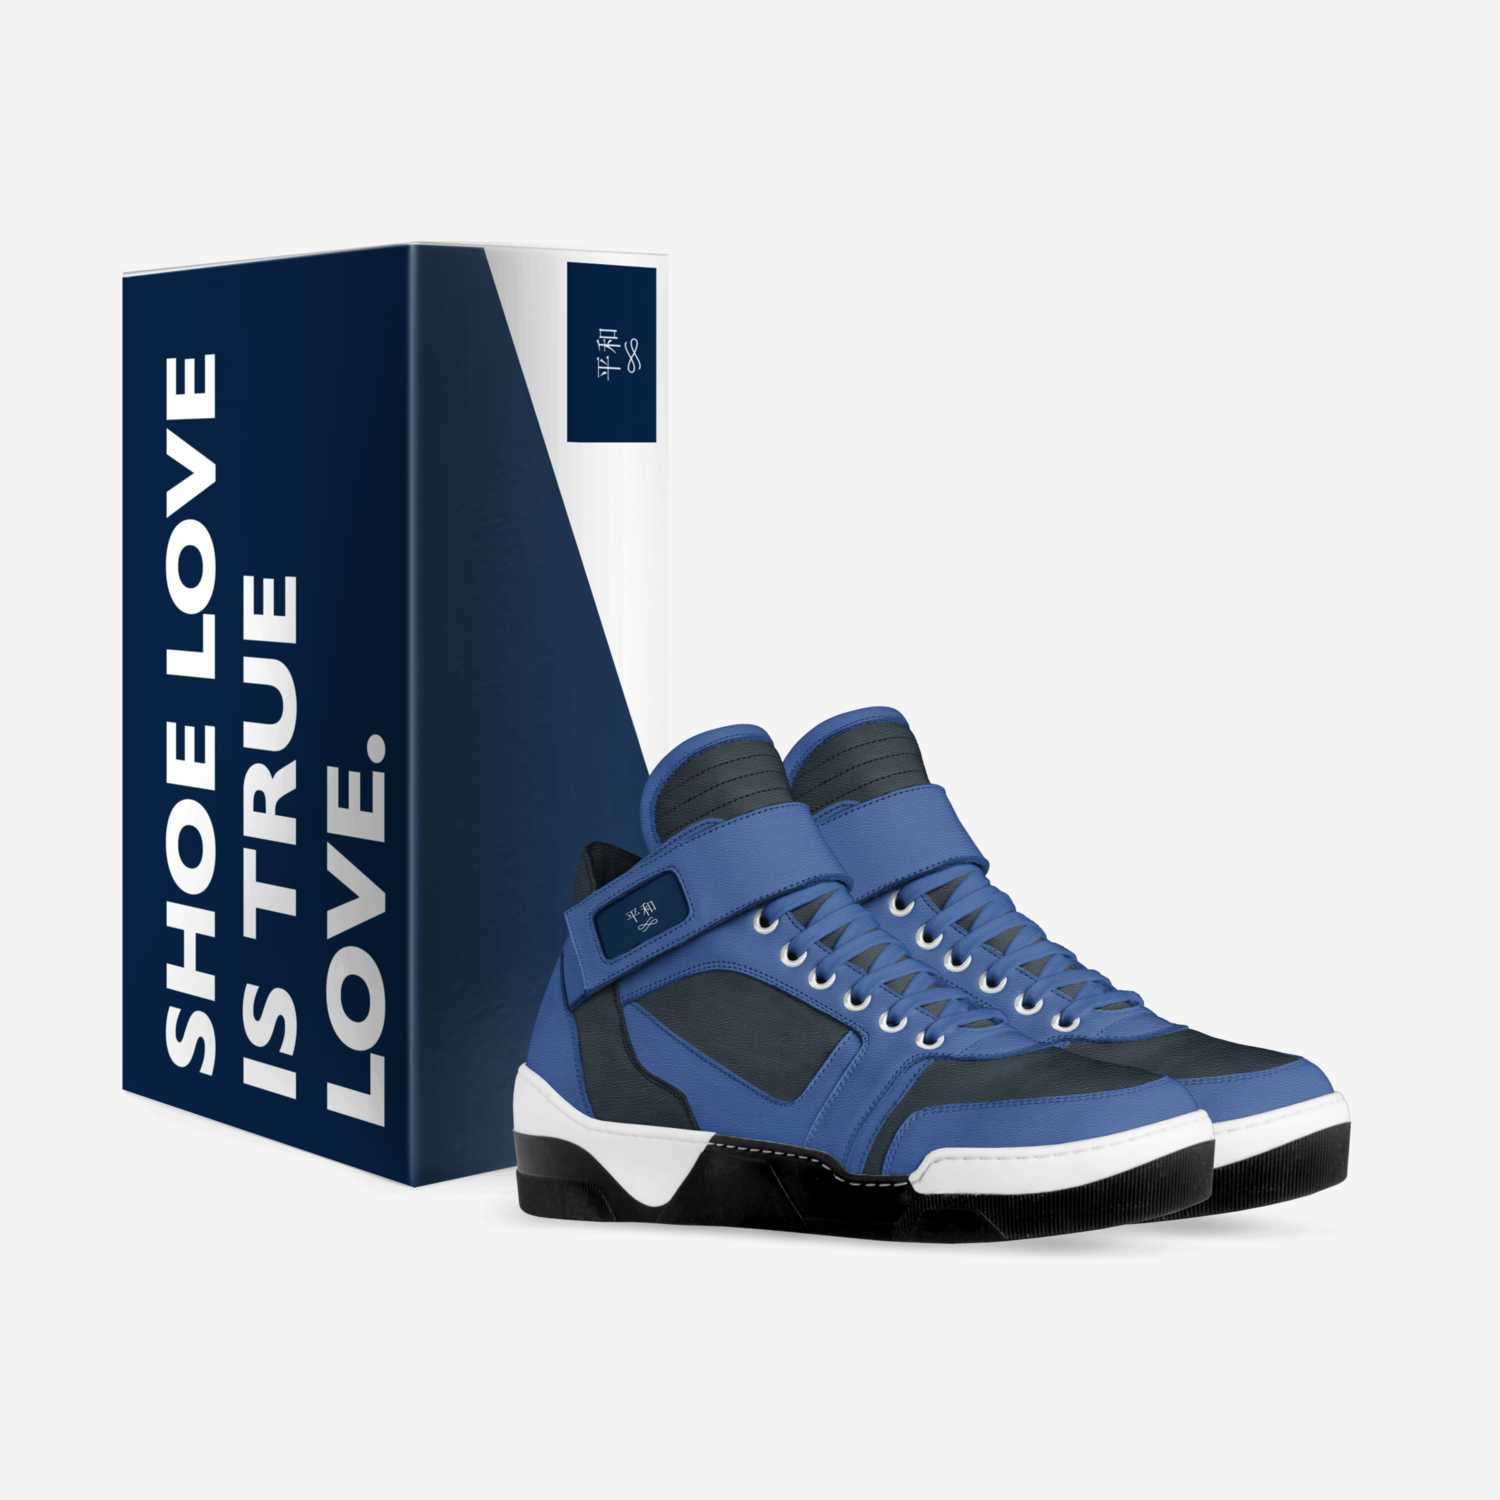 平和 custom made in Italy shoes by Shjayvion | Box view